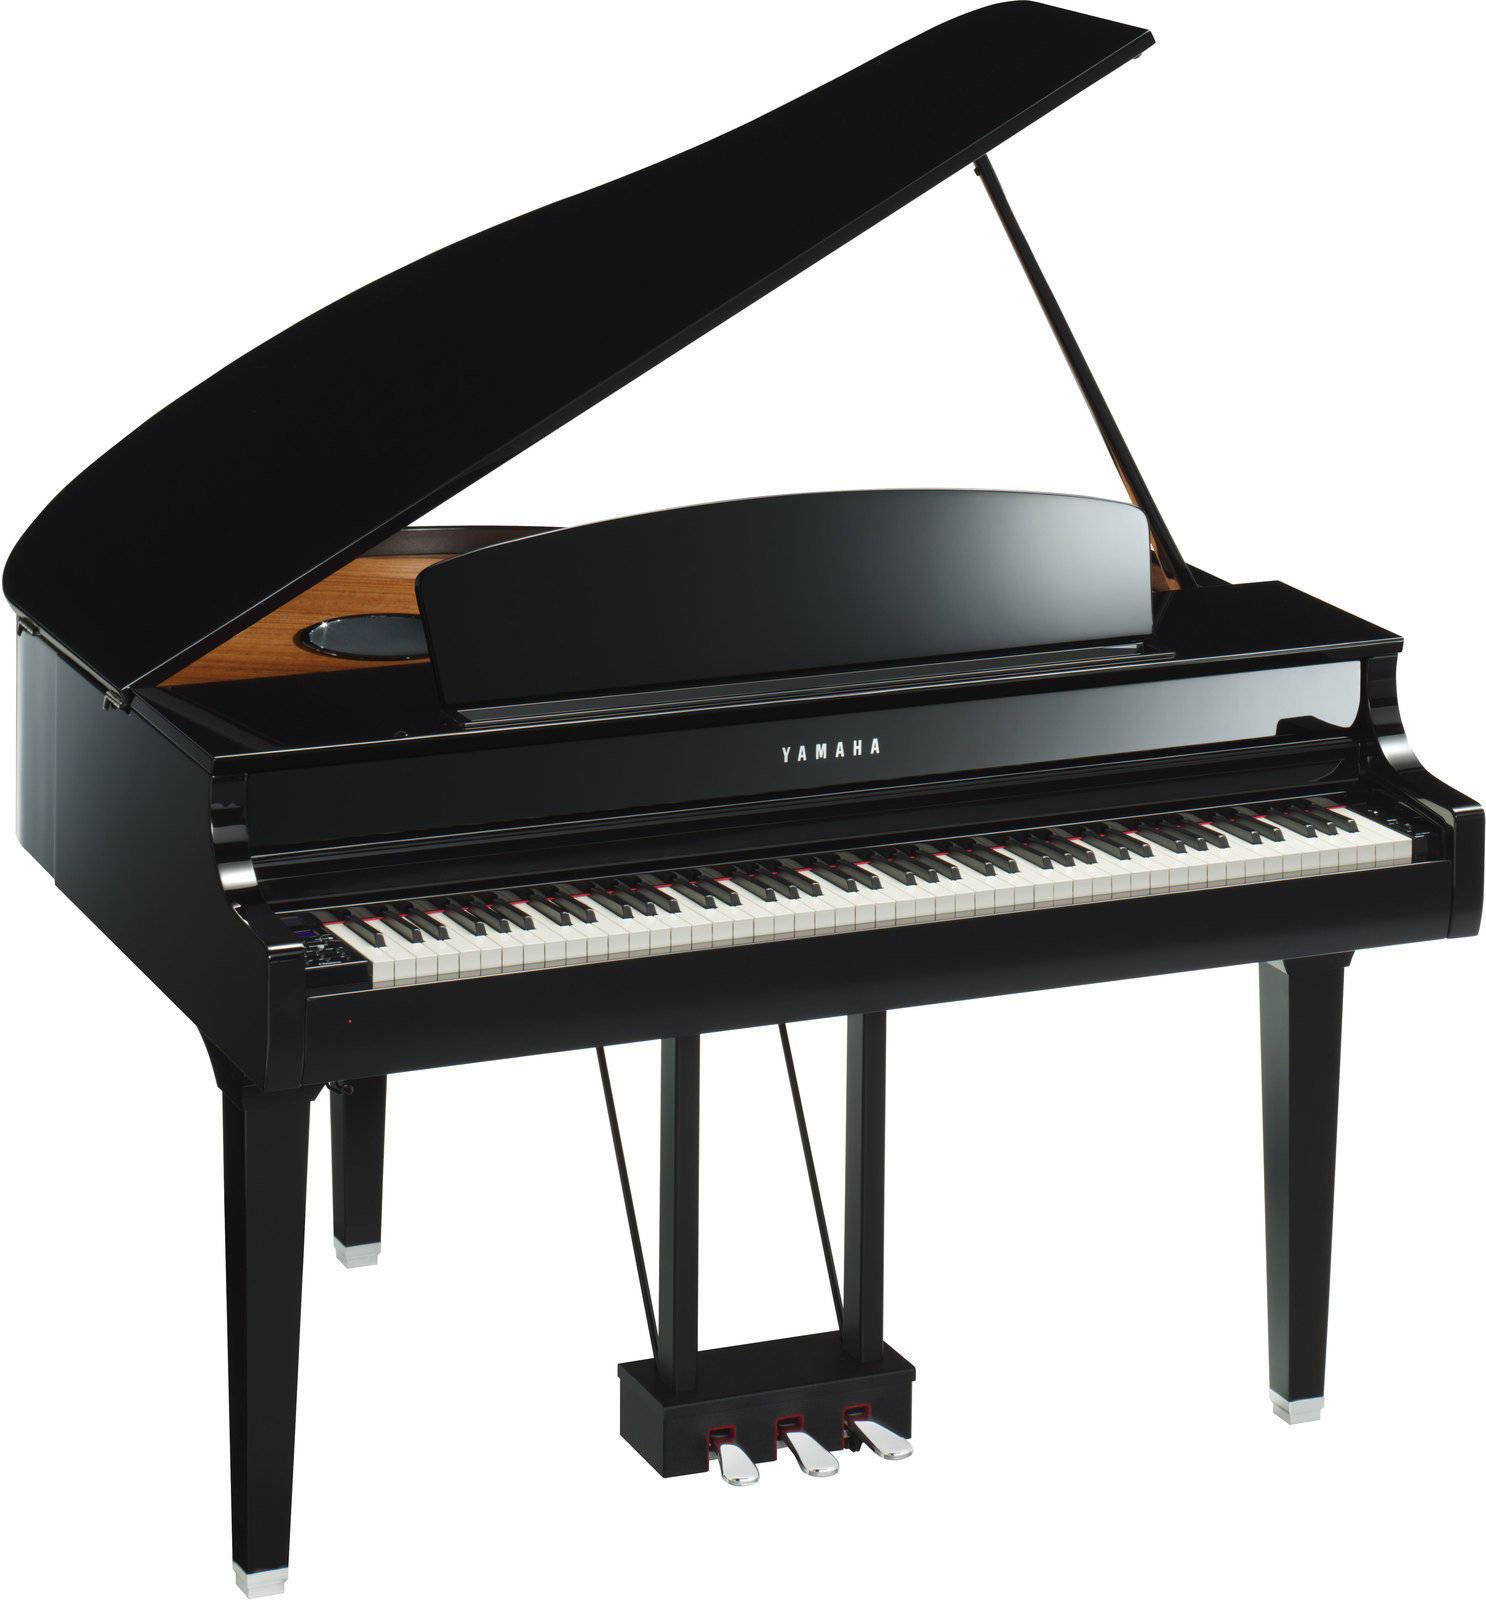 Ψηφιακό Πιάνο Yamaha CLP 665GP Polished Ebony Ψηφιακό Πιάνο